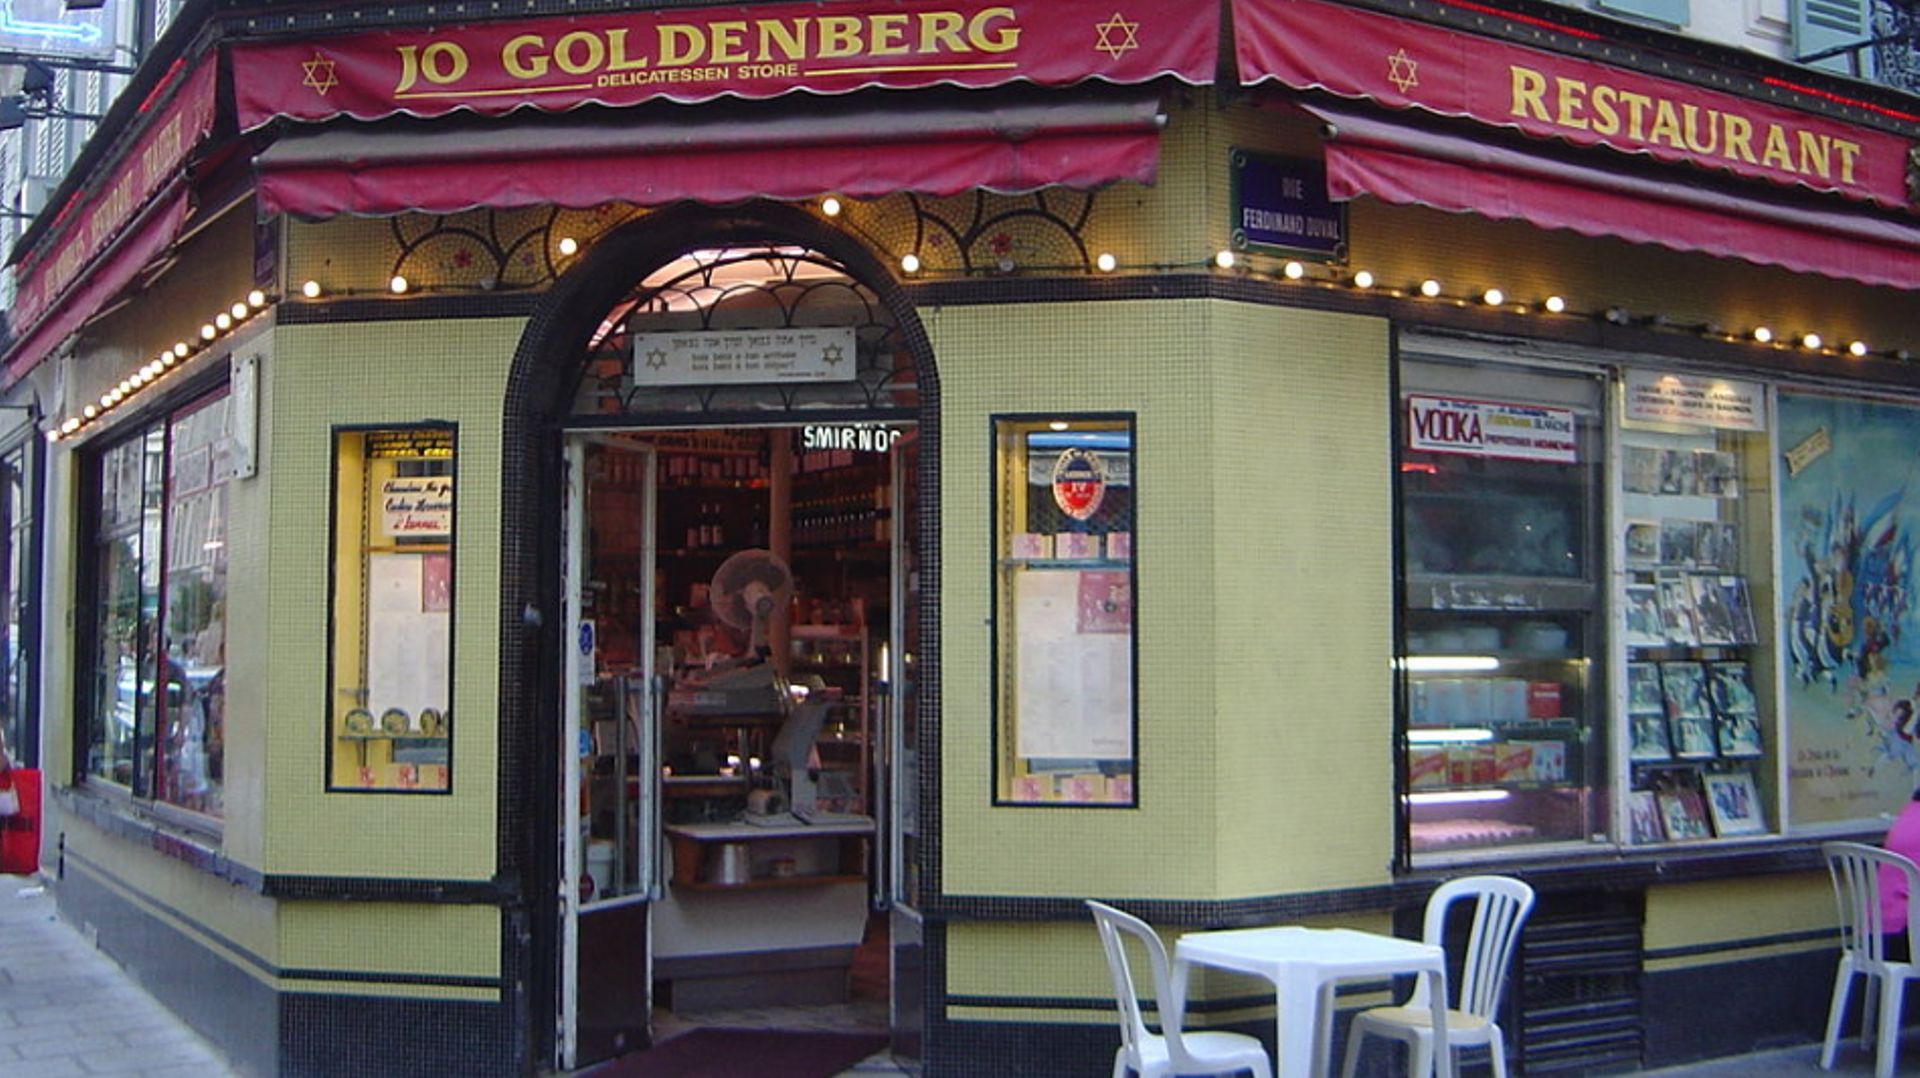 Le restaurant Jo Goldenberg de la rue des Rosiers à Paris